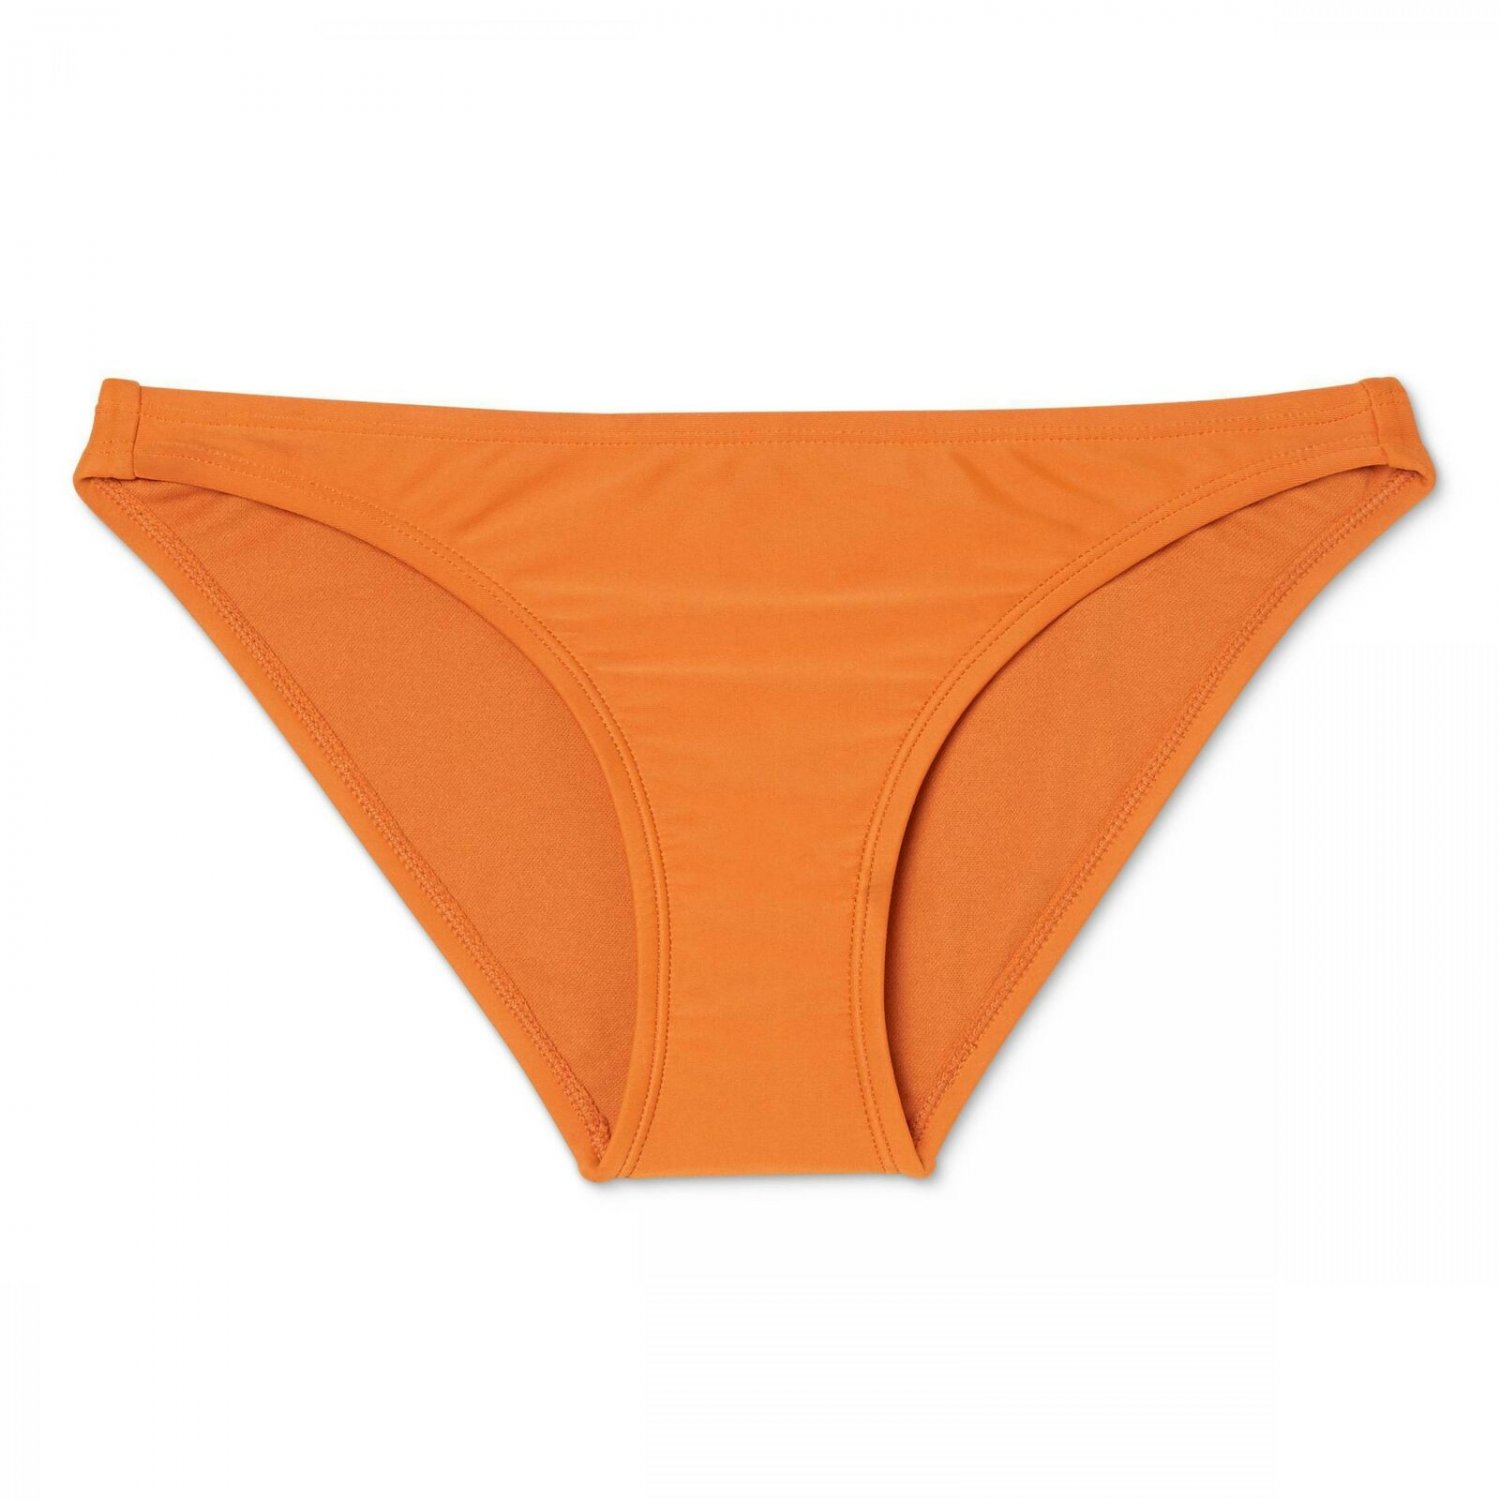 Xhilaration Women's Hipster Bikini Bottom X-Large Pumpkin Orange